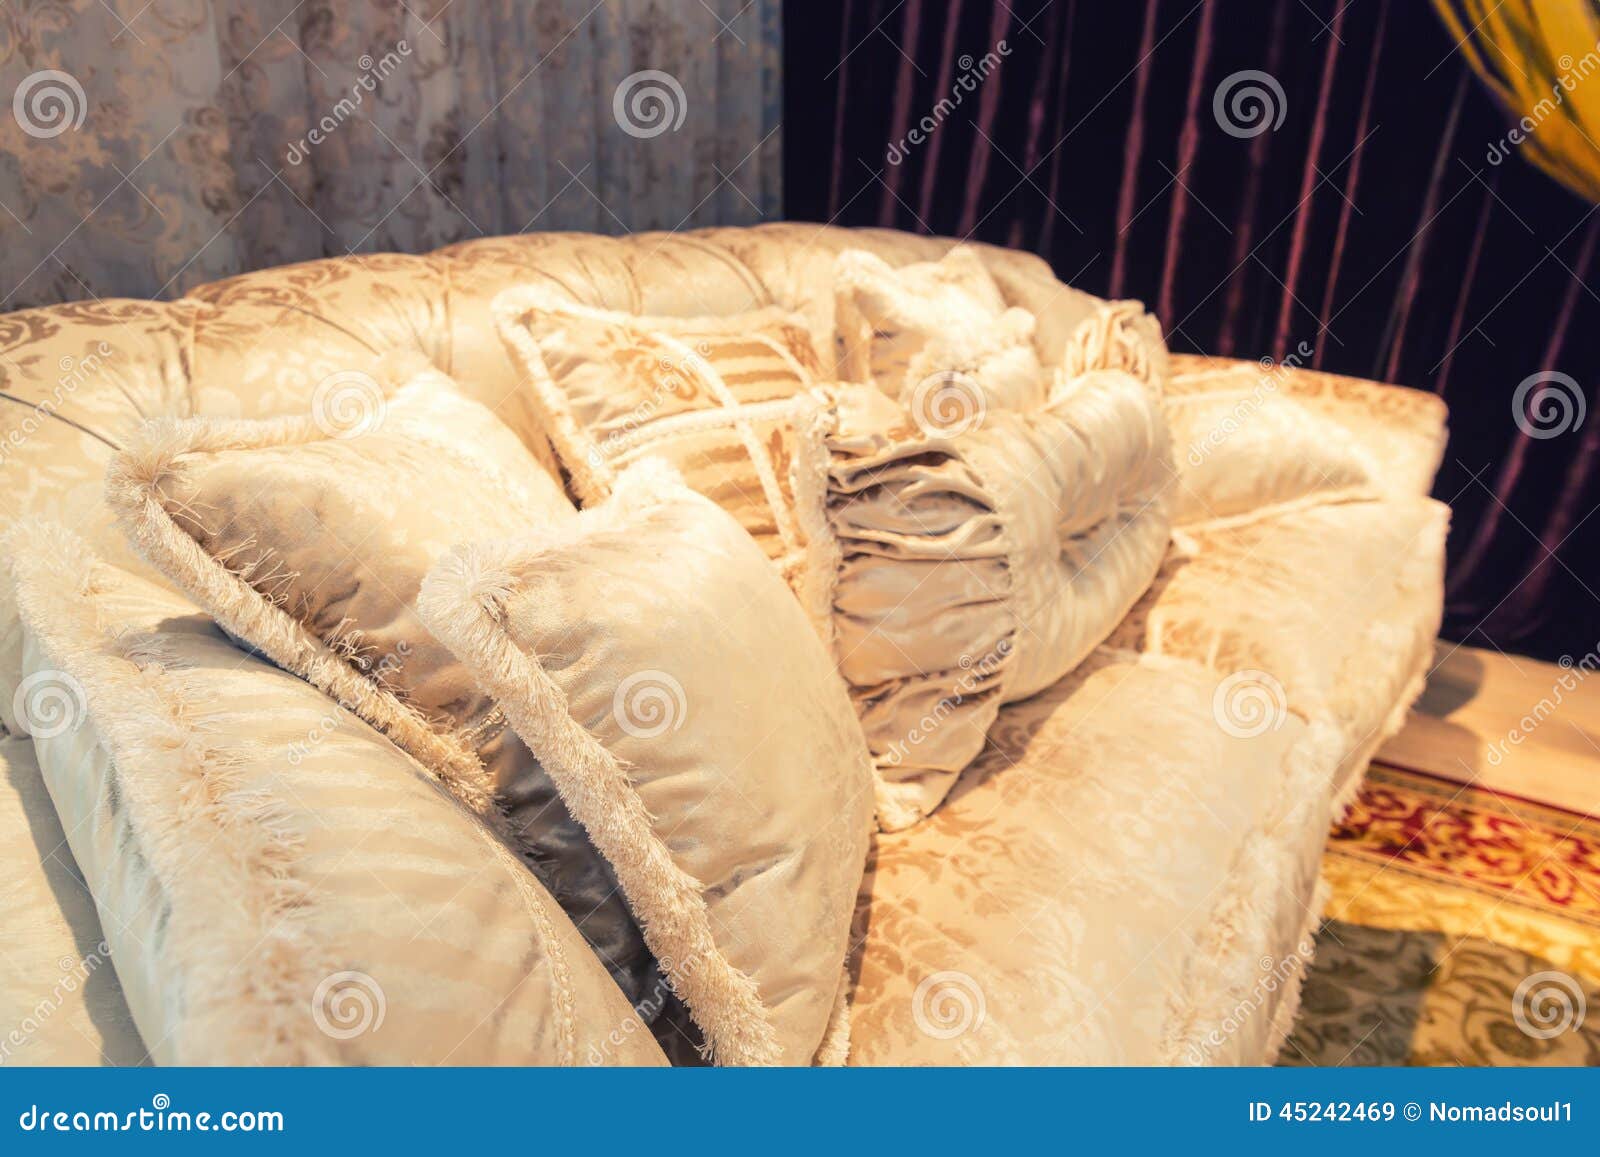 Velvet Pillows On The Light Brown Sofa Stock Image Image Of Flat